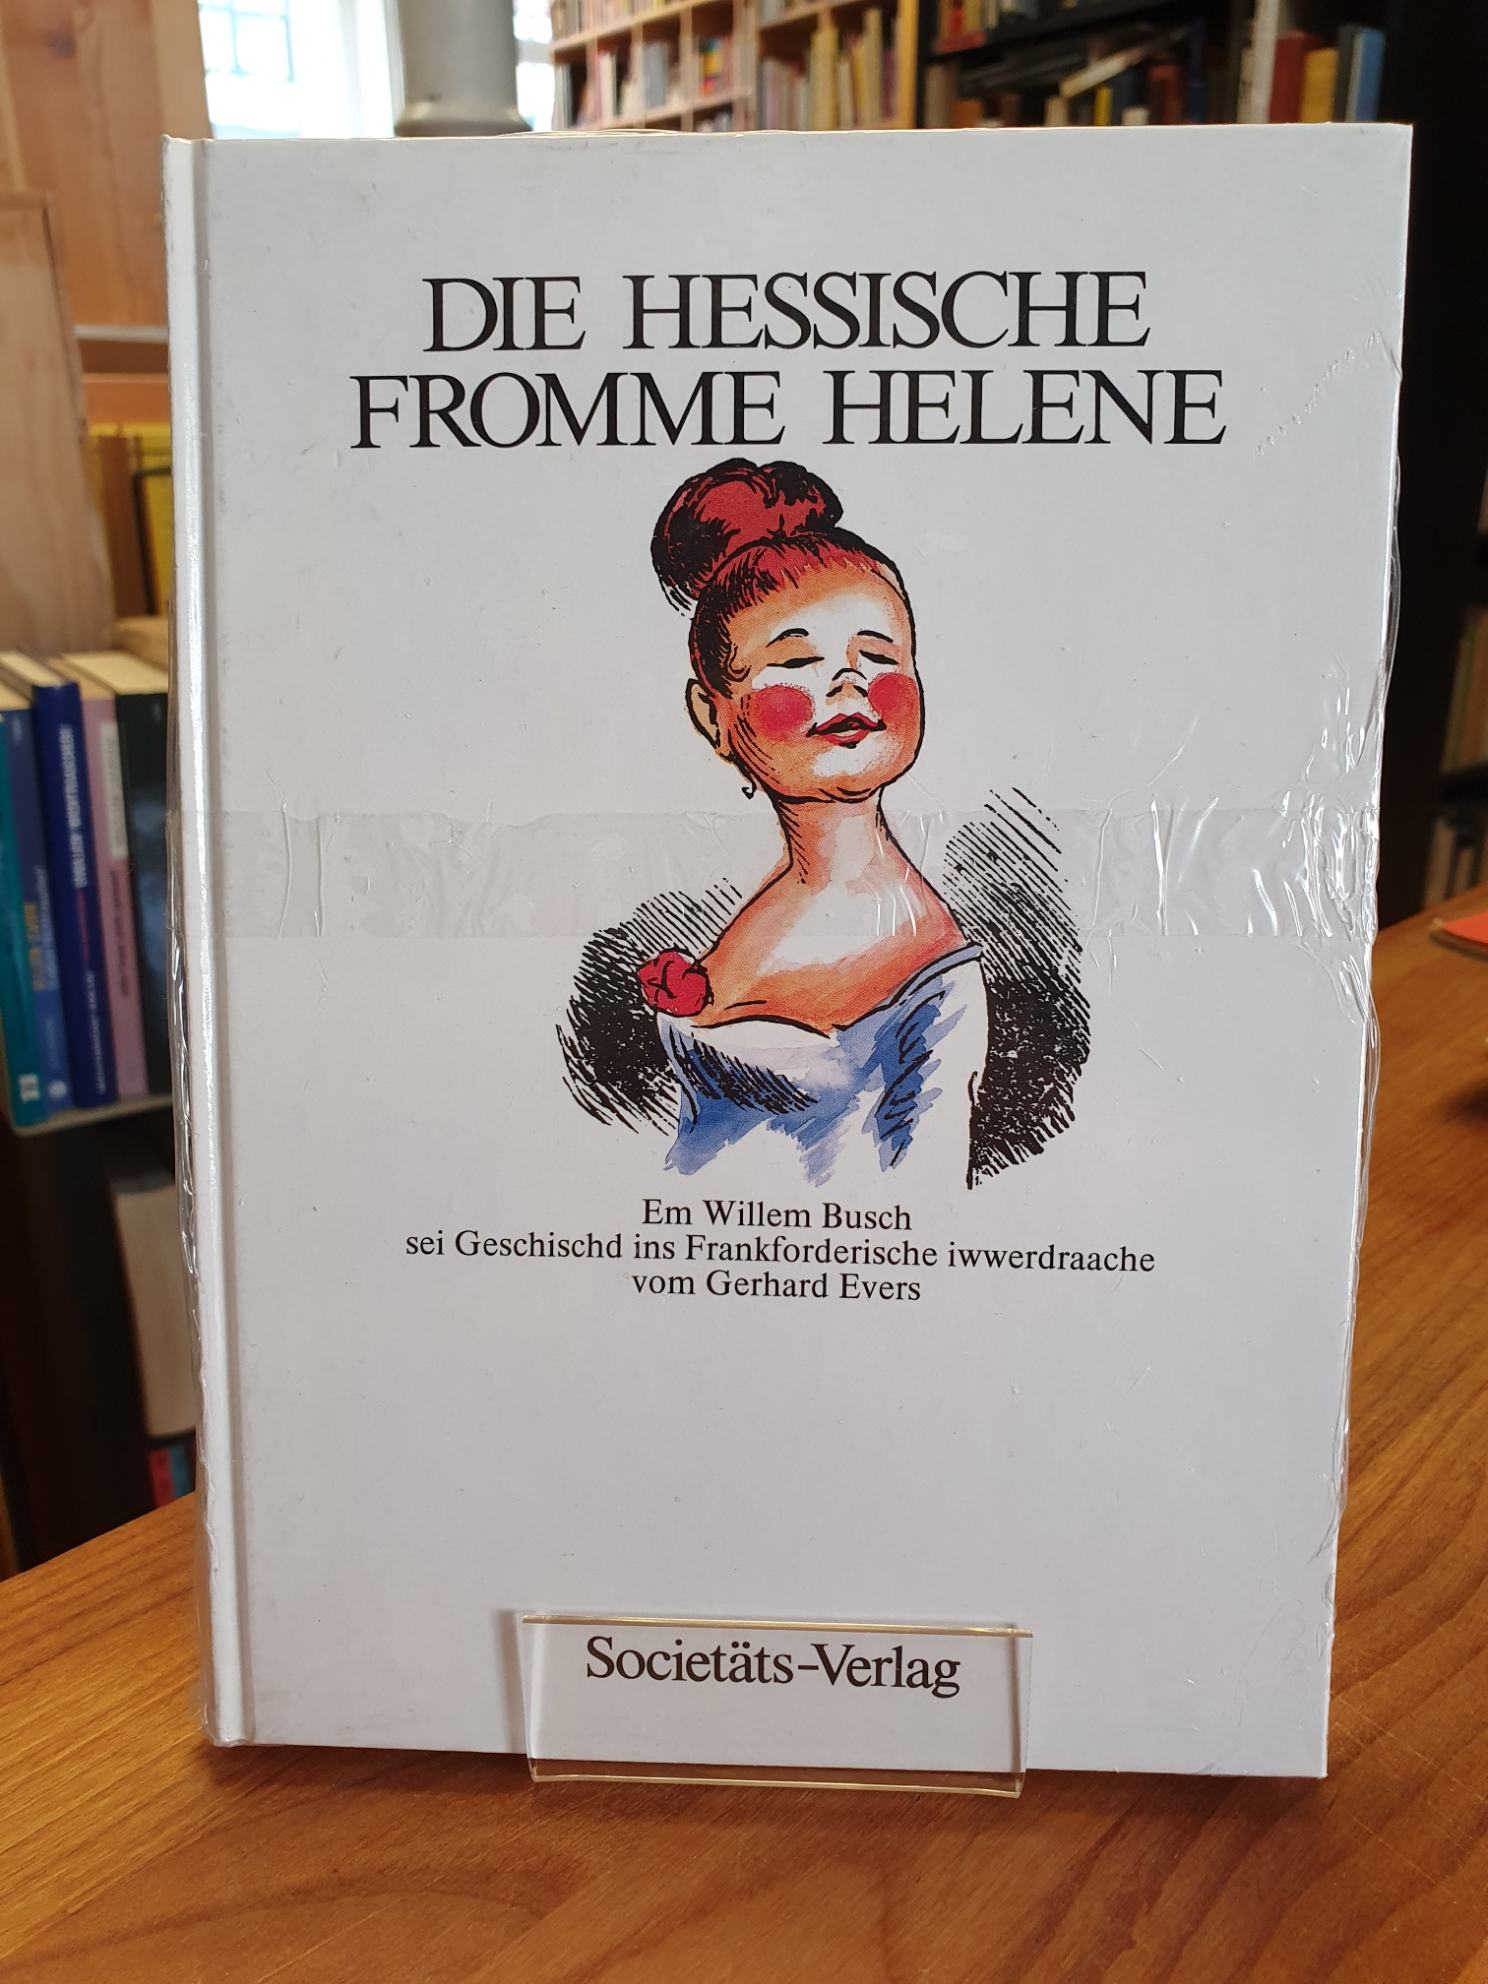 Busch, Die hessische Fromme Helene – Em Willem Busch sei Geschischd,